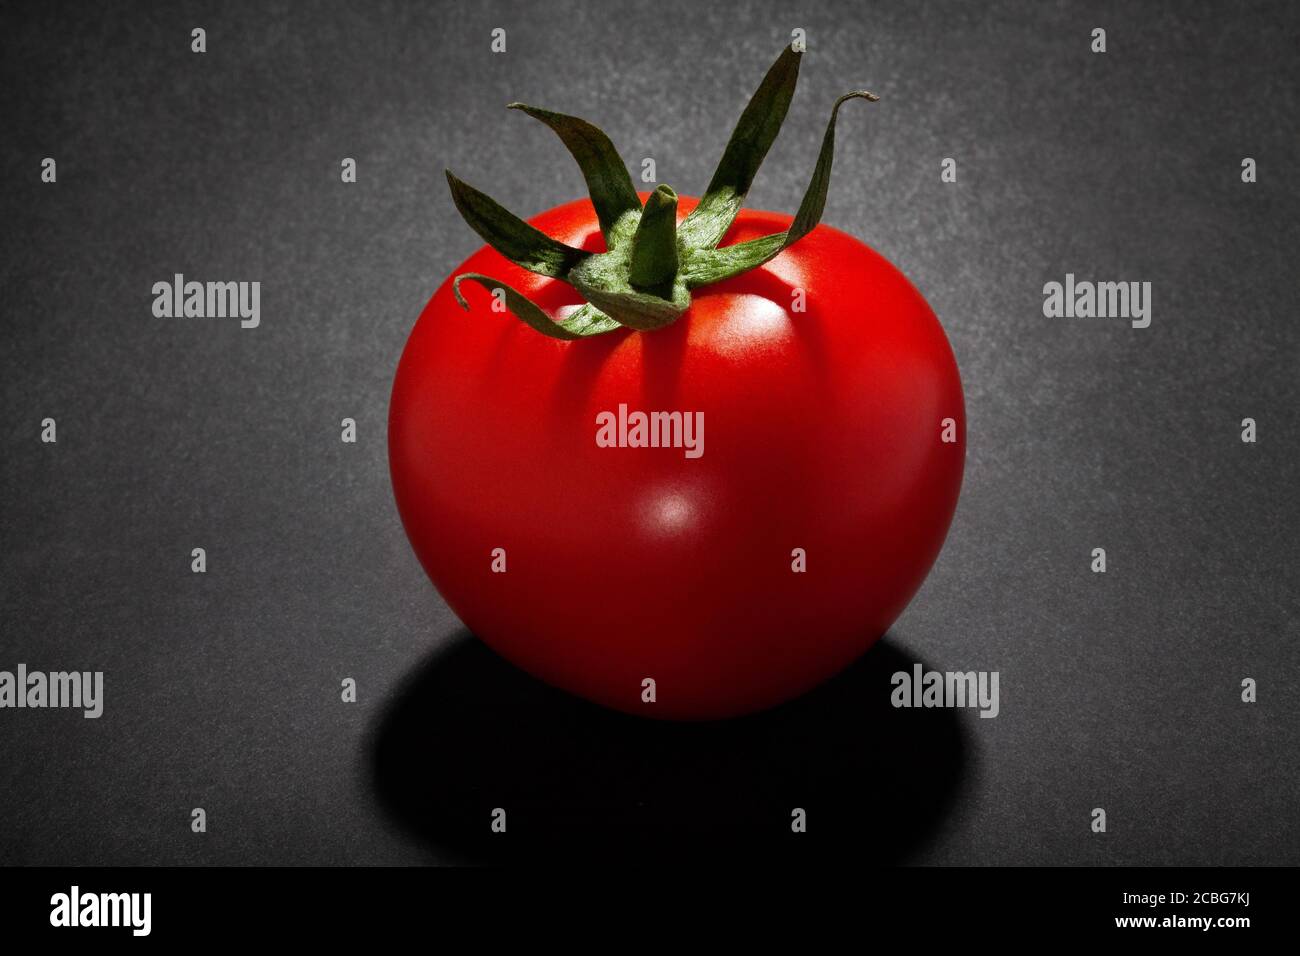 tomato isolated on black background Stock Photo